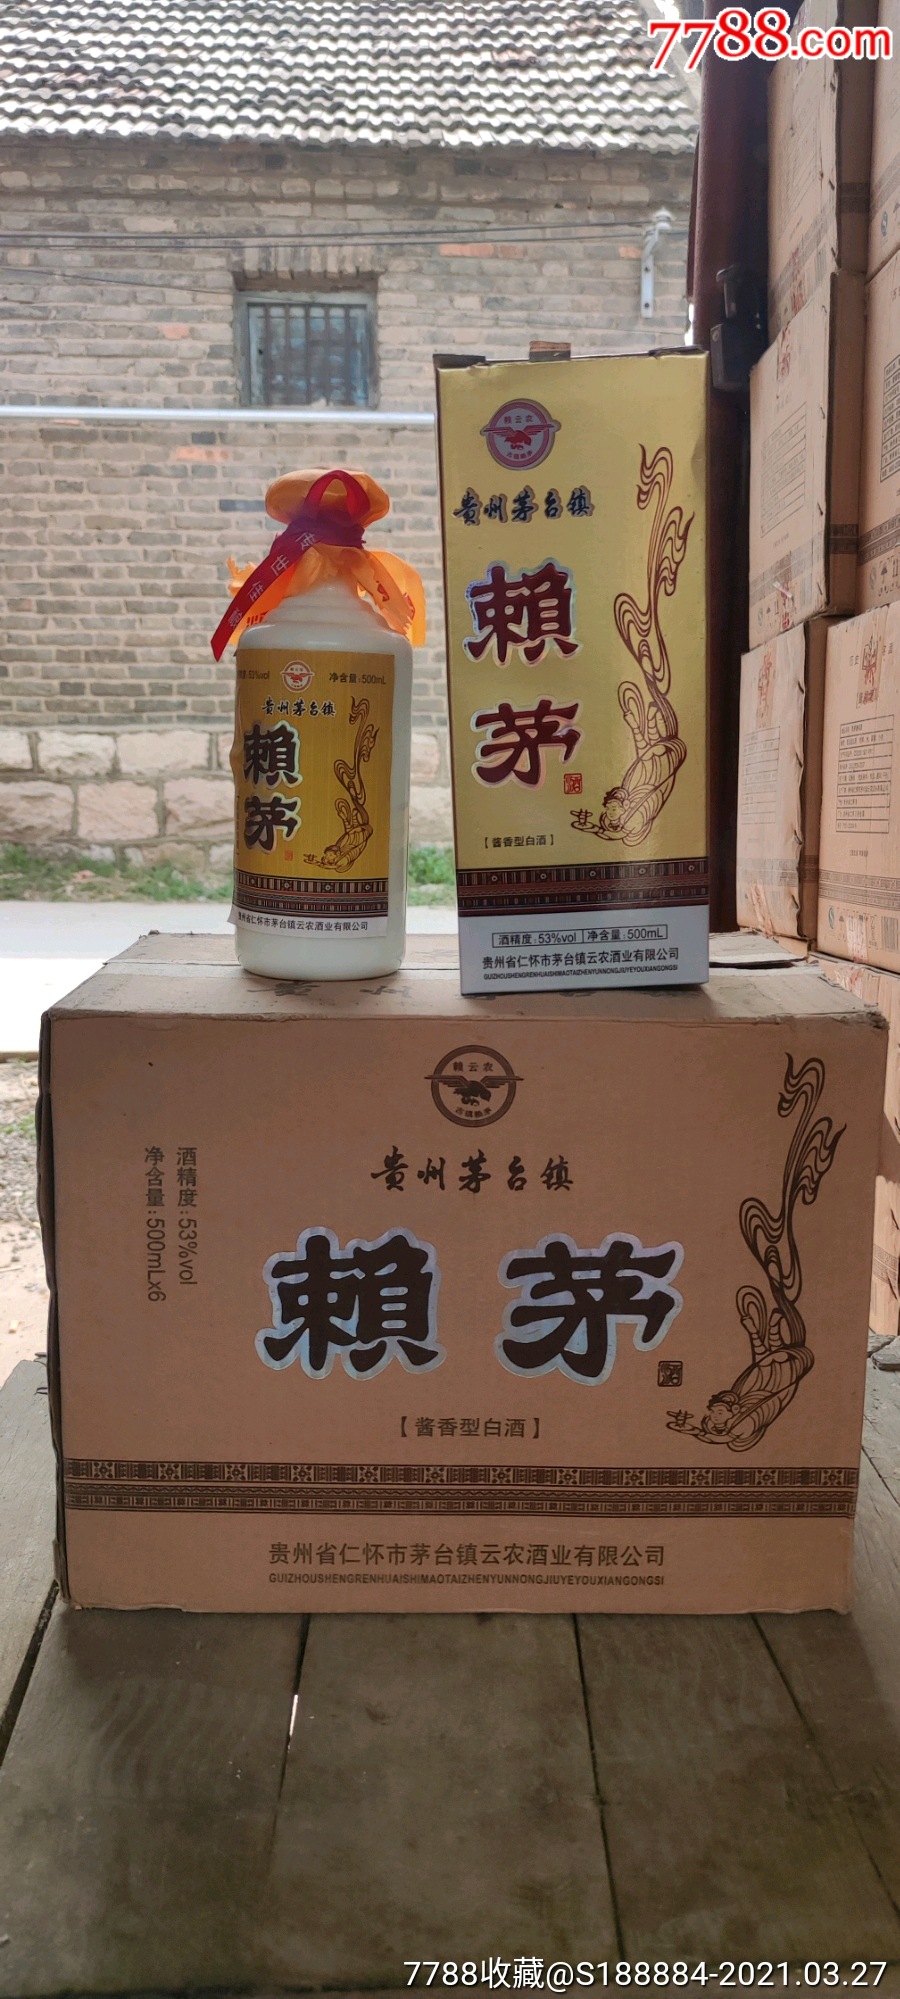 2012年产53度赖云农赖茅酒整箱6瓶